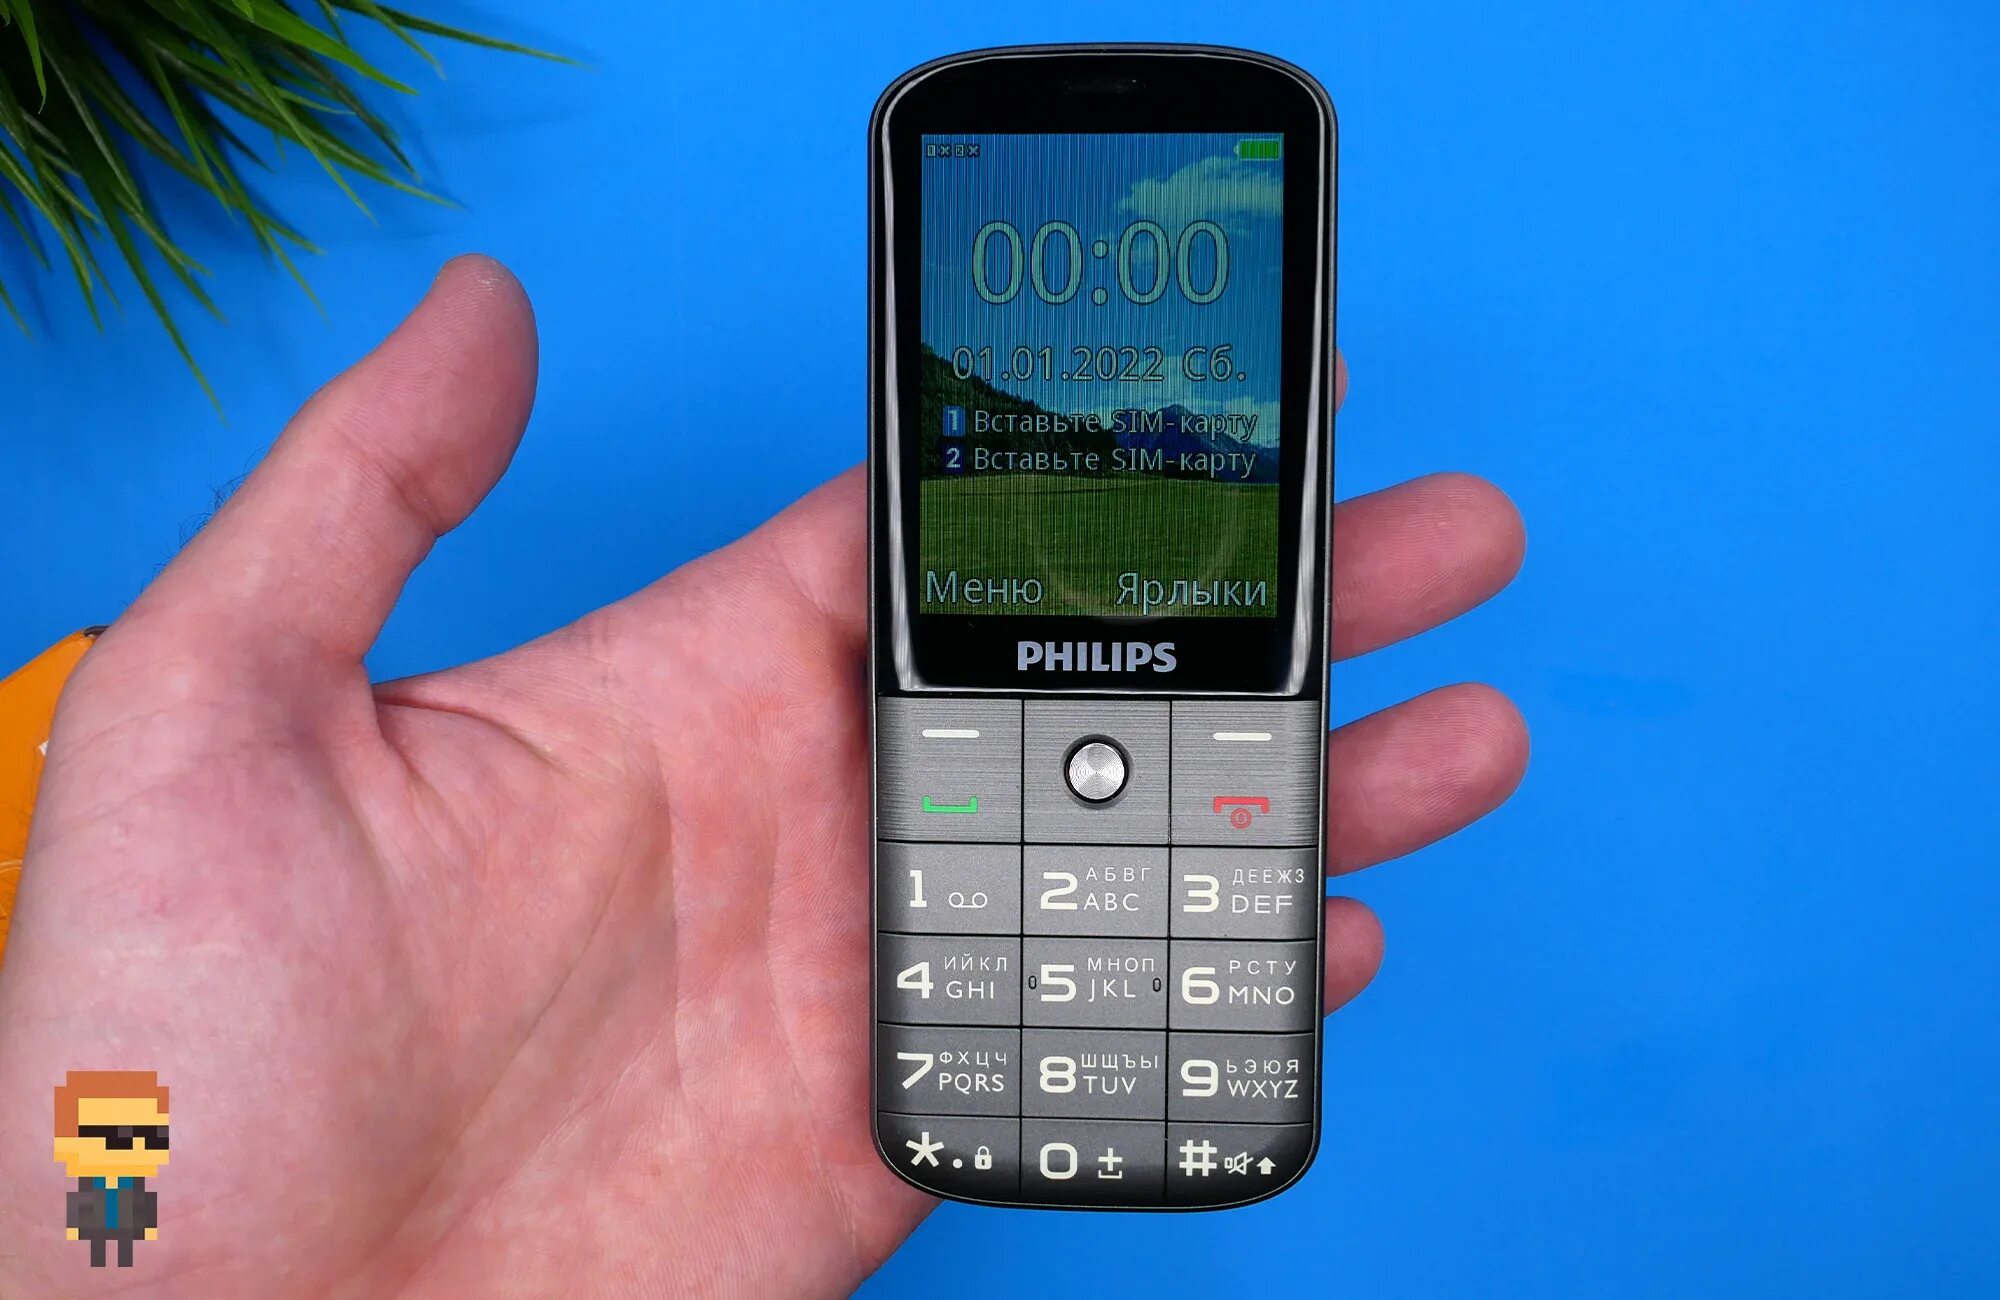 Филипс 227. Philips 227e. Бабушкафон с телевизором. Philips Xenium с джойстиком. Кнопочный телефон с большим экраном много кнопок.